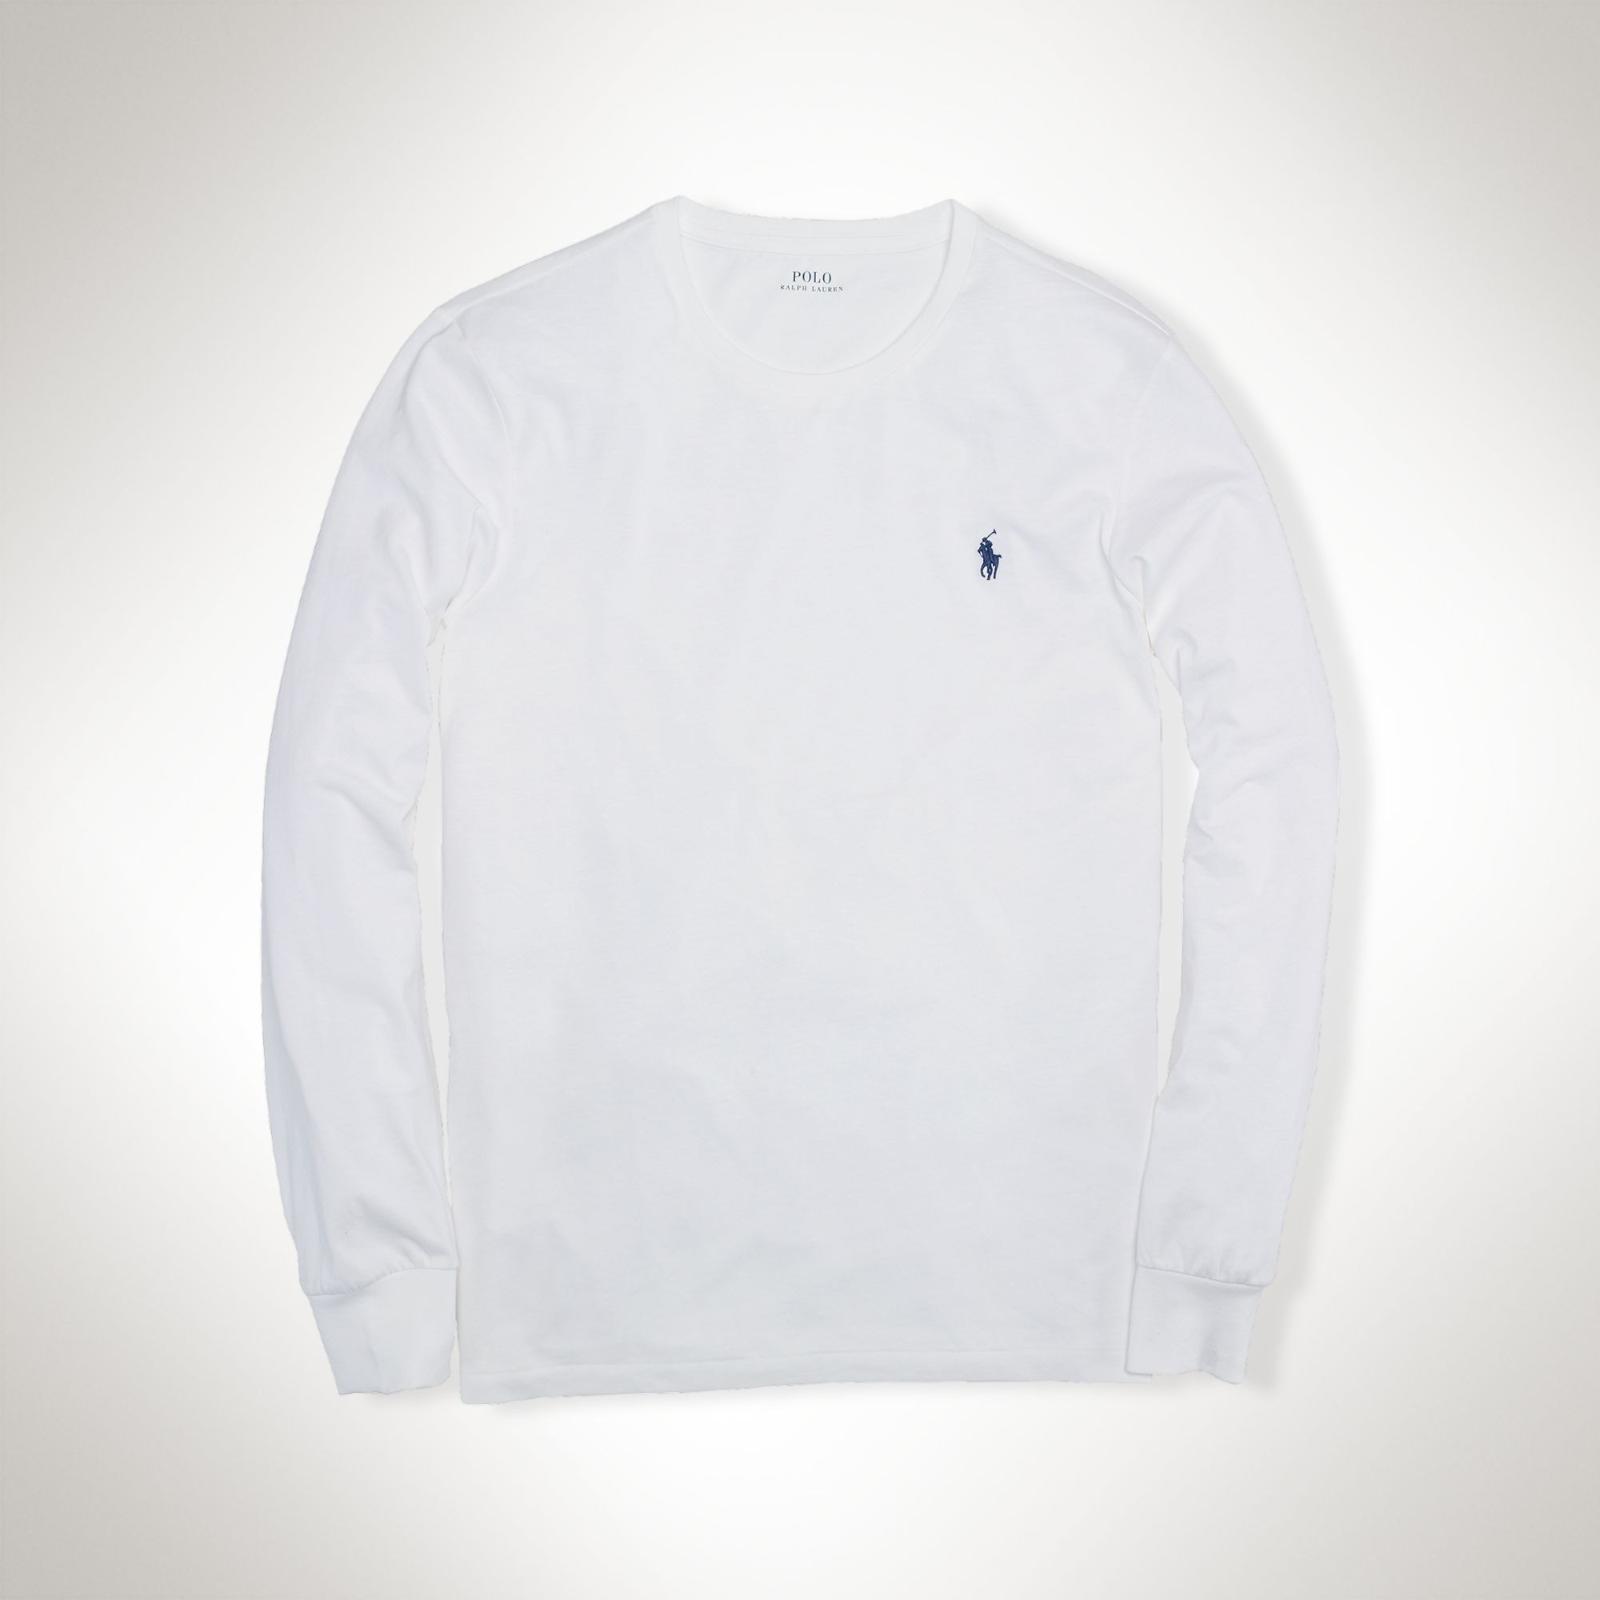 RALPH LAUREN tričko dlouhý rukáv bílé  pánské XL - Pánské oblečení